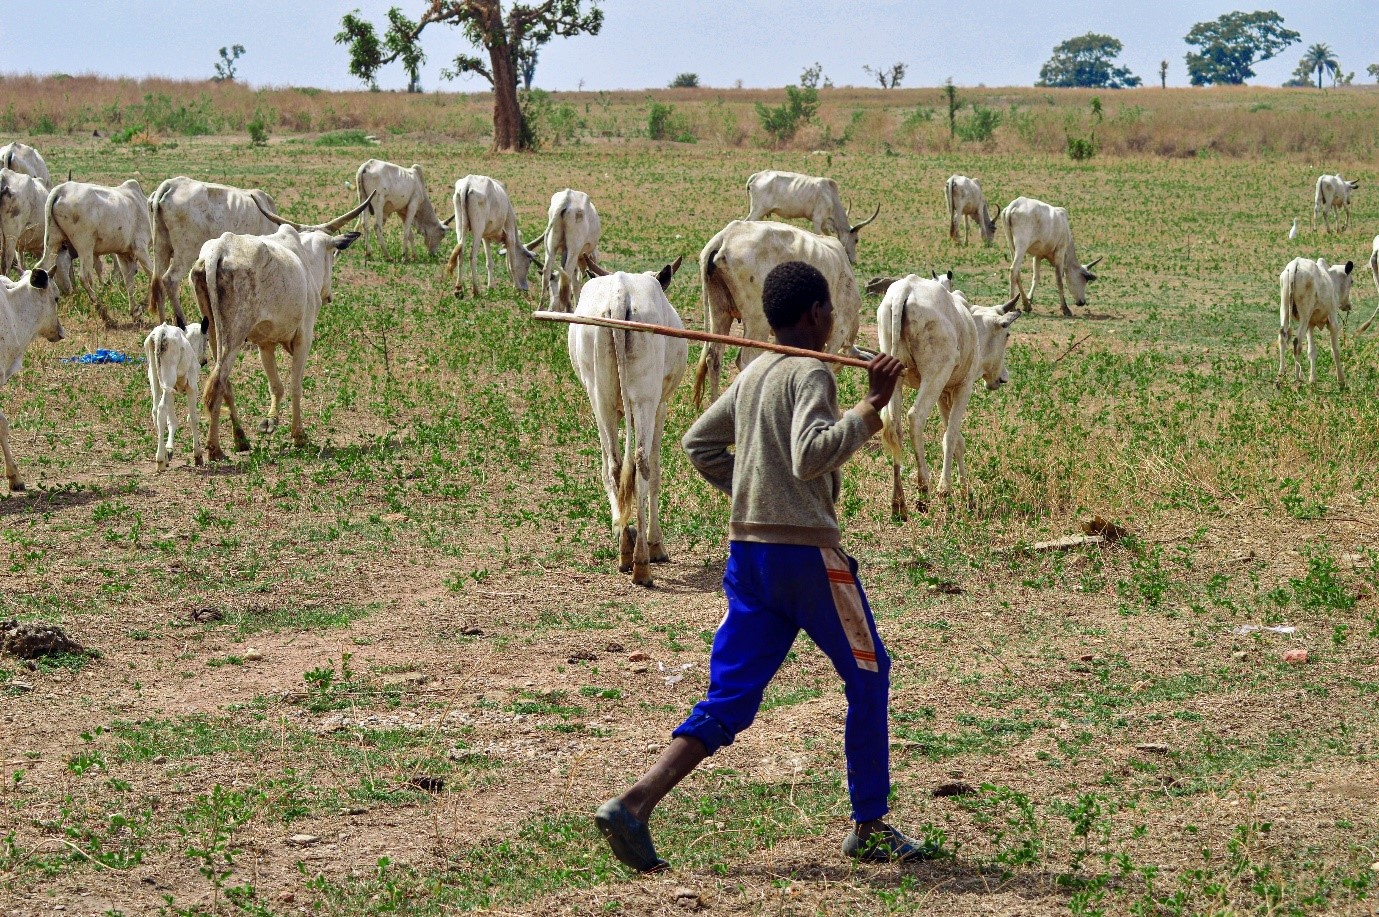 A herder in Nigeria